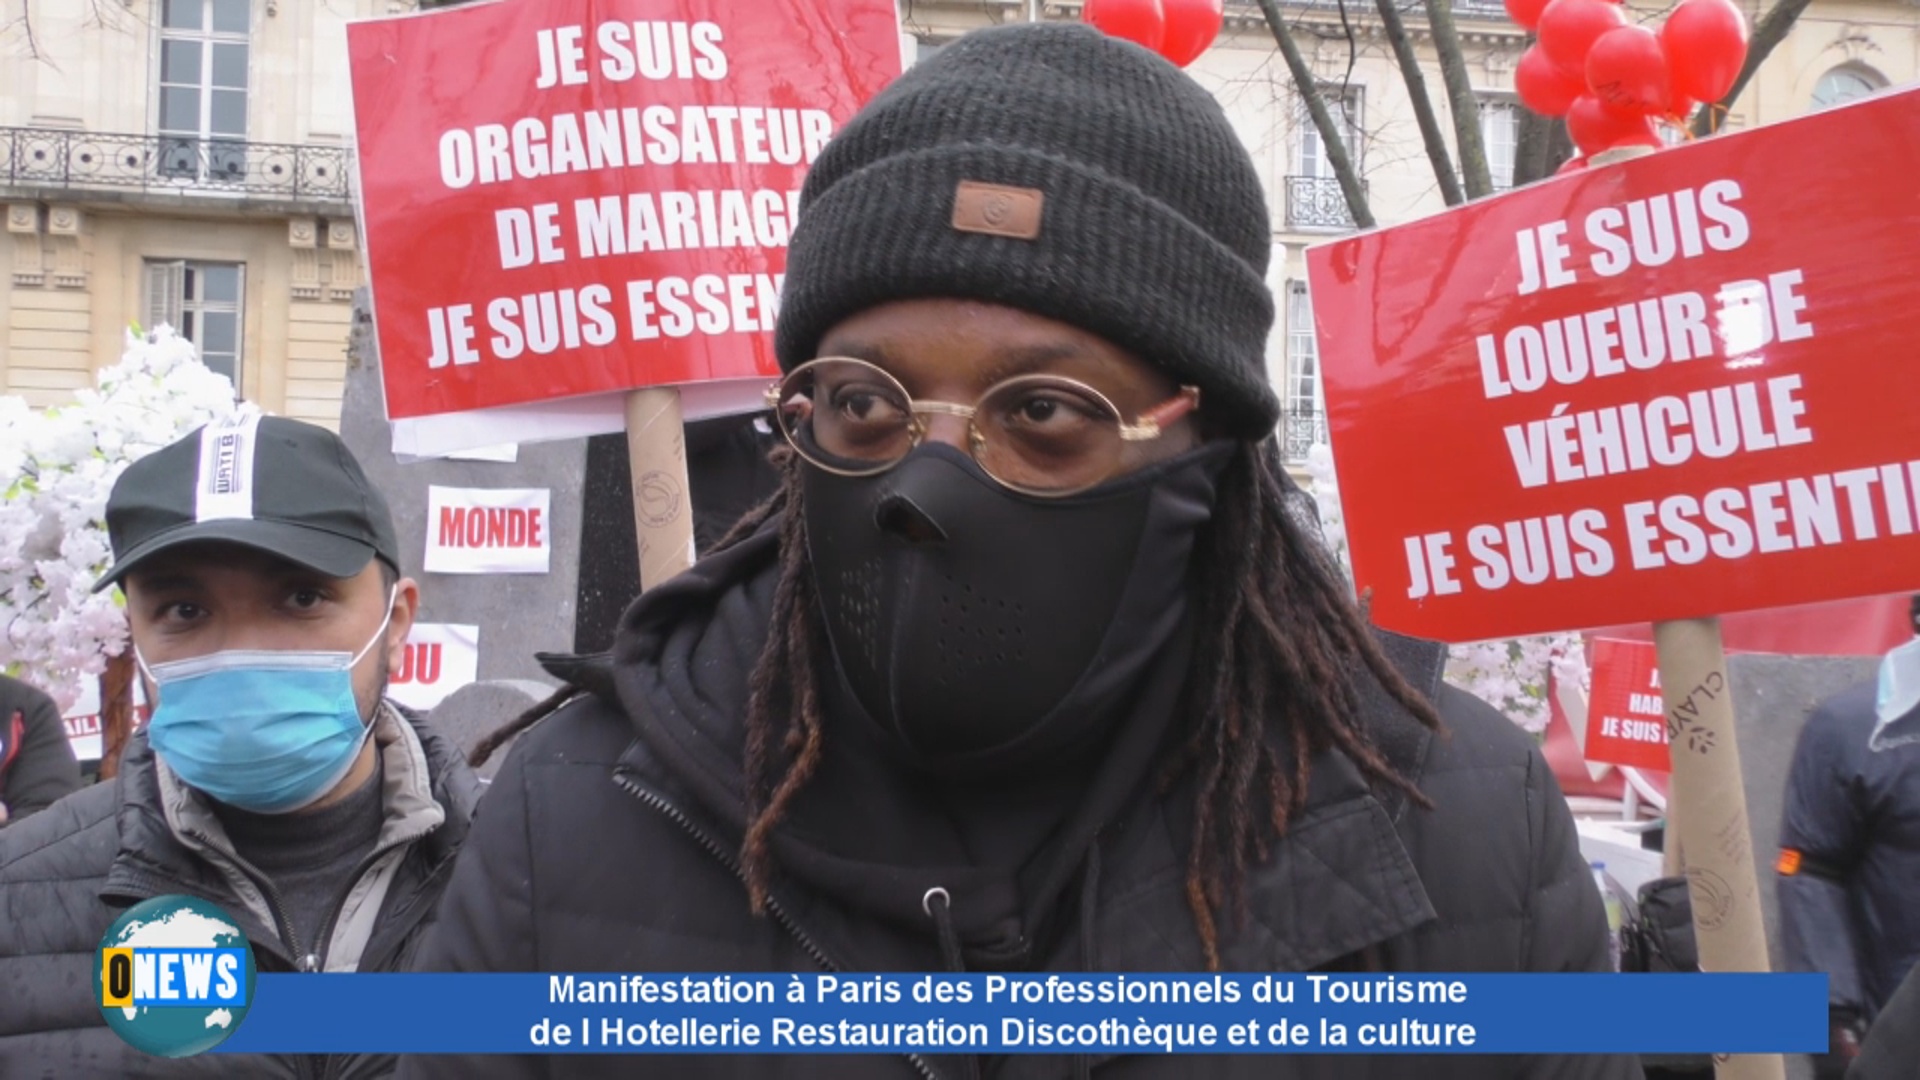 [Vidéo] Onews Hexagone. Manifestation à Paris des Professionnels du Tourisme Restauration Discothèque et Culture